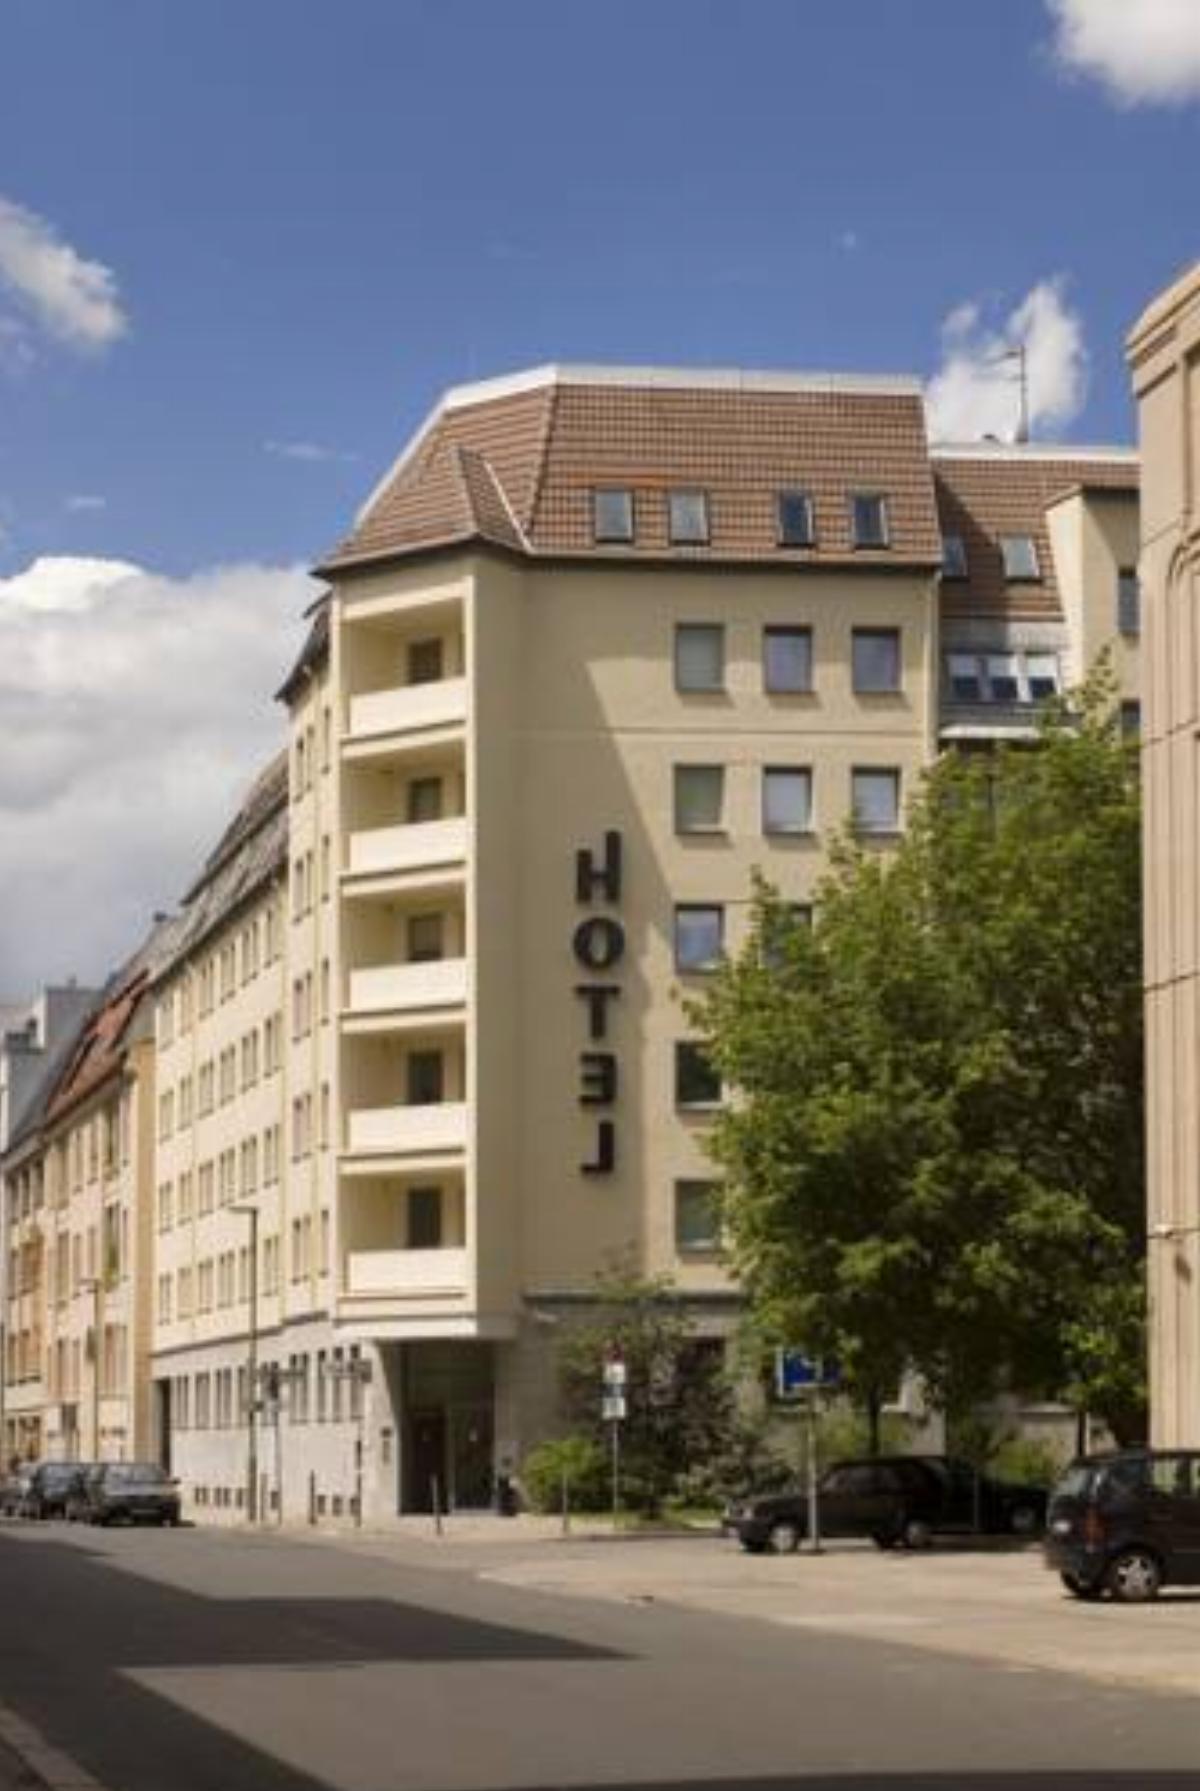 Dietrich-Bonhoeffer-Hotel Berlin Mitte Hotel Berlin Germany